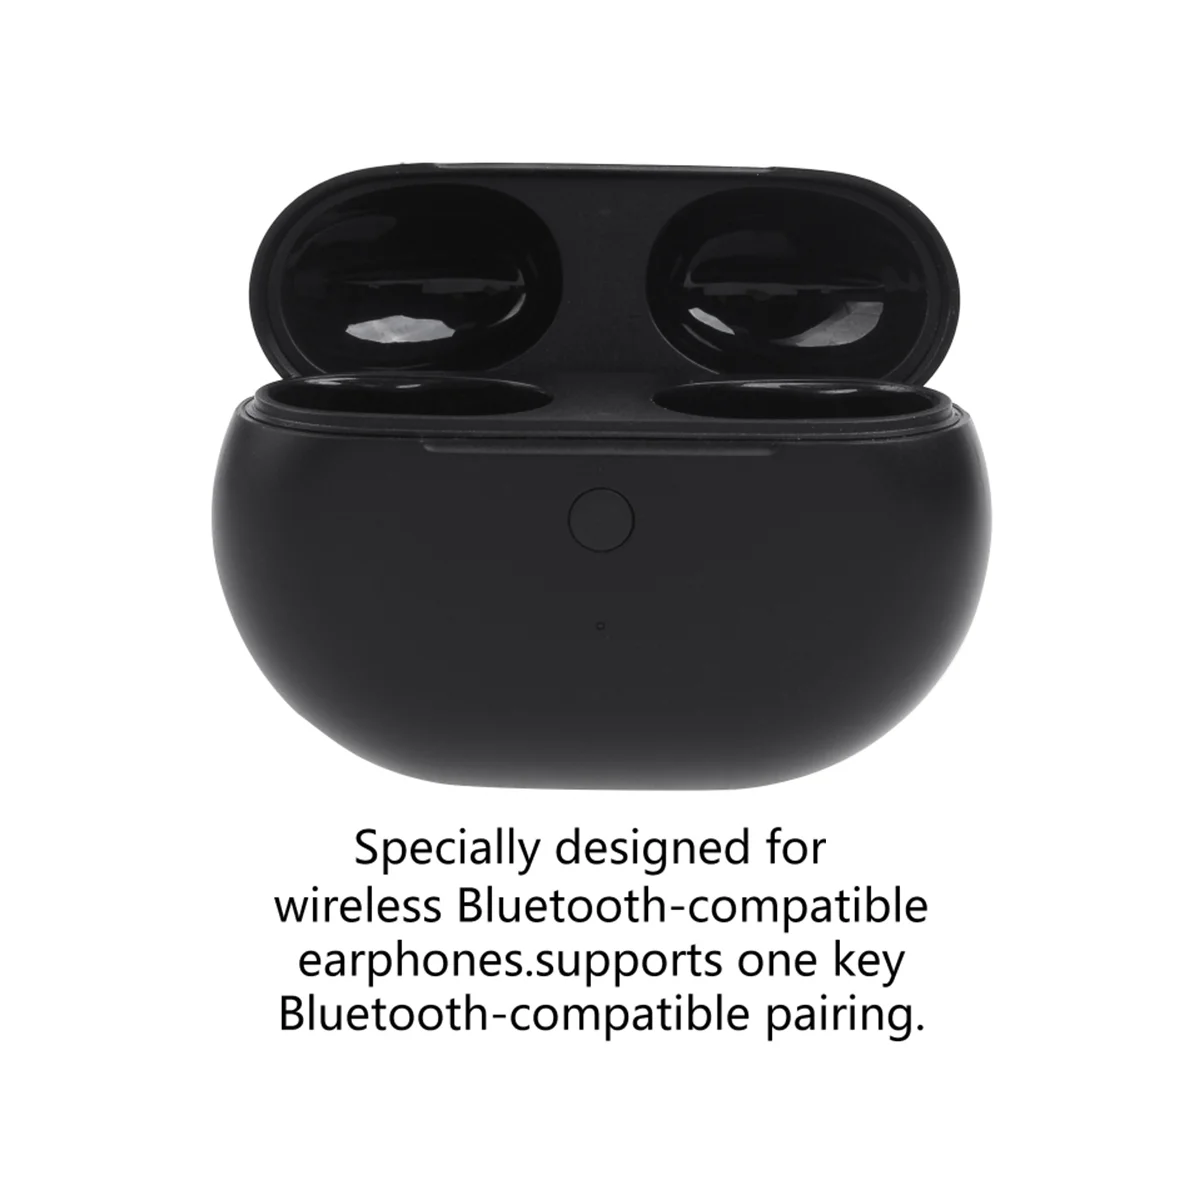 Чехол для зарядки Beats Studio Buds с кнопкой синхронизации сопряжения по Bluetooth и сменным чехлом для зарядного устройства для наушников емкостью 660 мАч